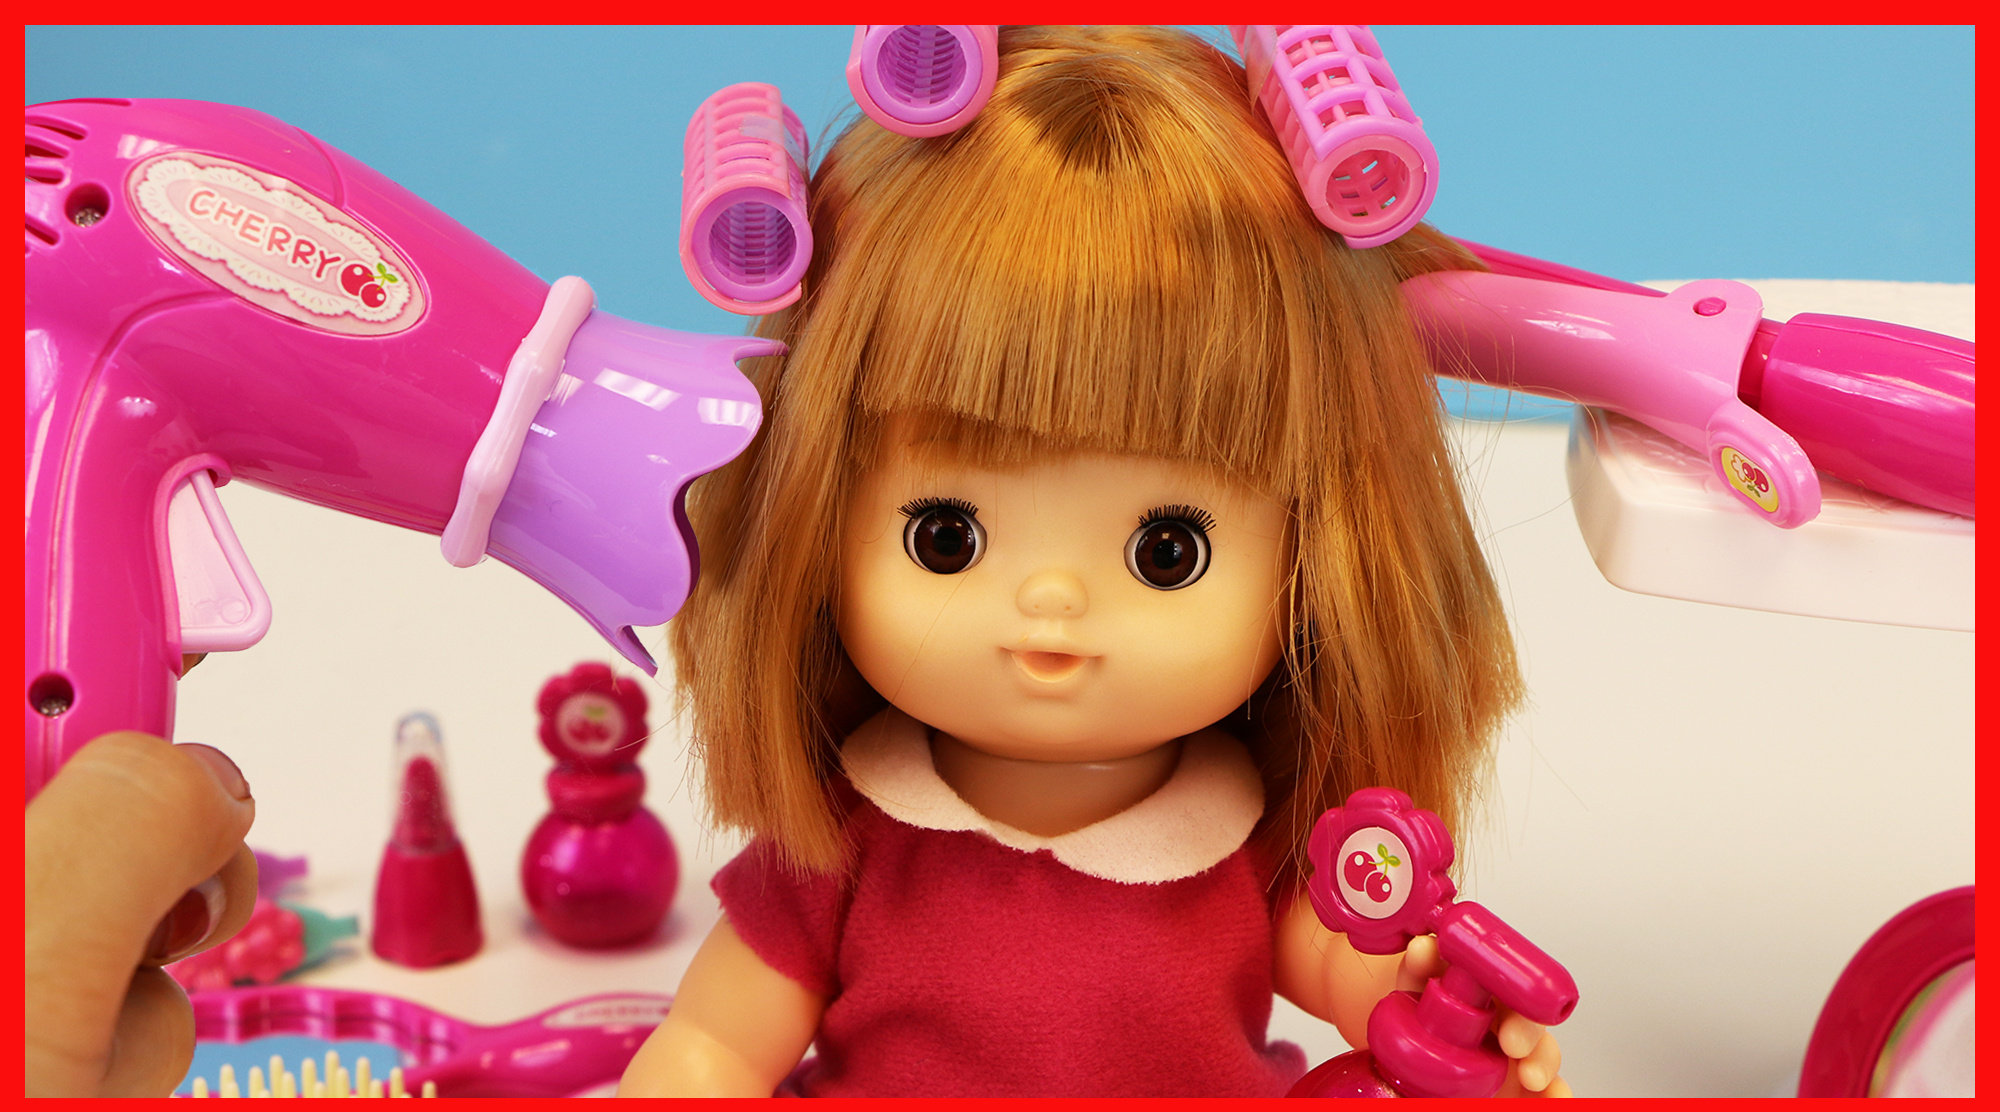 可爱好玩的洋娃娃剪头发的美发玩具过家家 宝宝 儿童 玩具 洋娃娃 